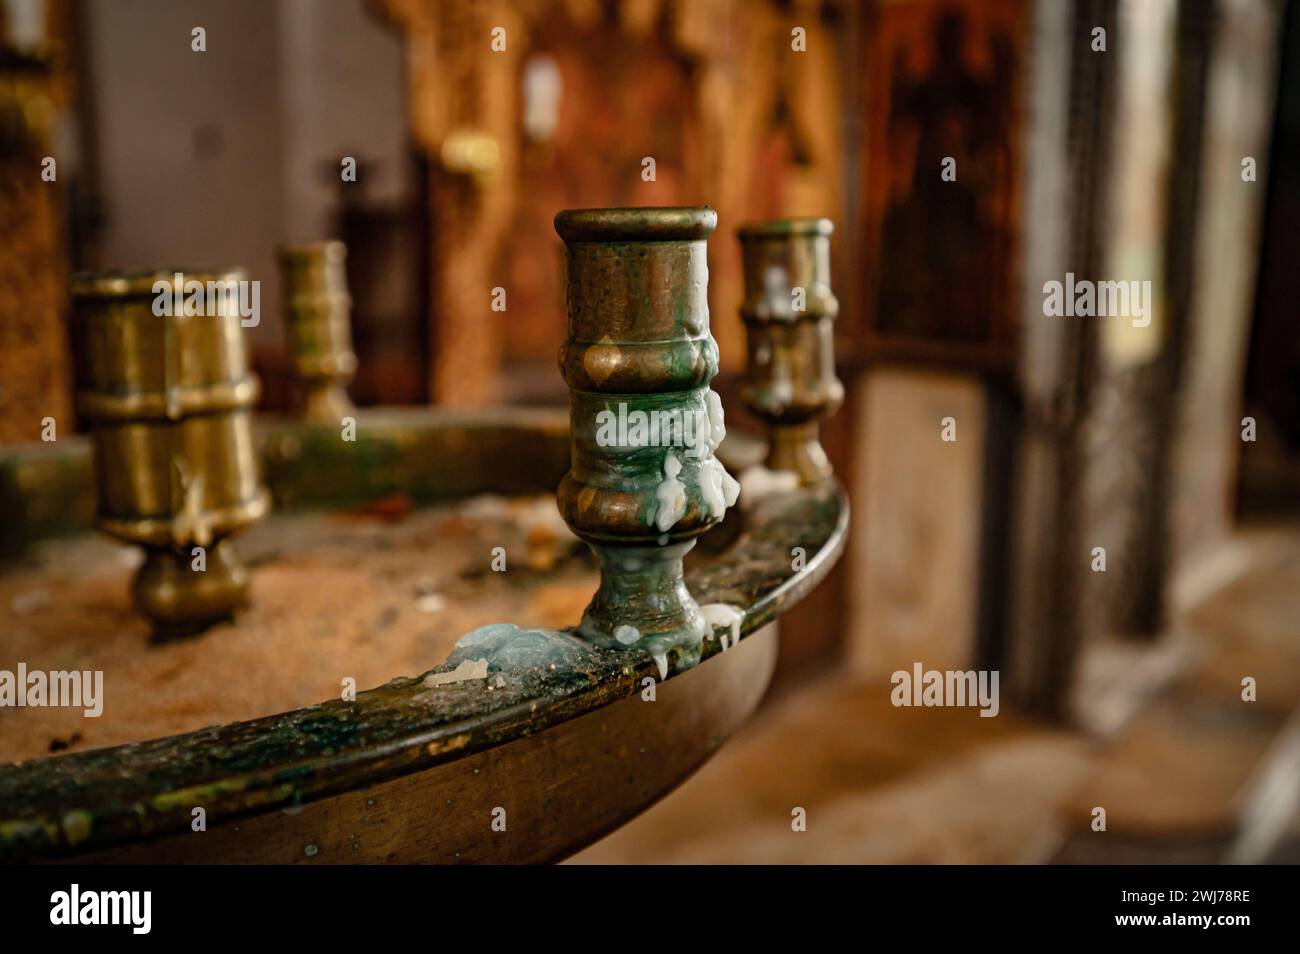 Portacandele in metallo esposto su un tavolo in legno rustico in uno spazio interno ben illuminato Foto Stock